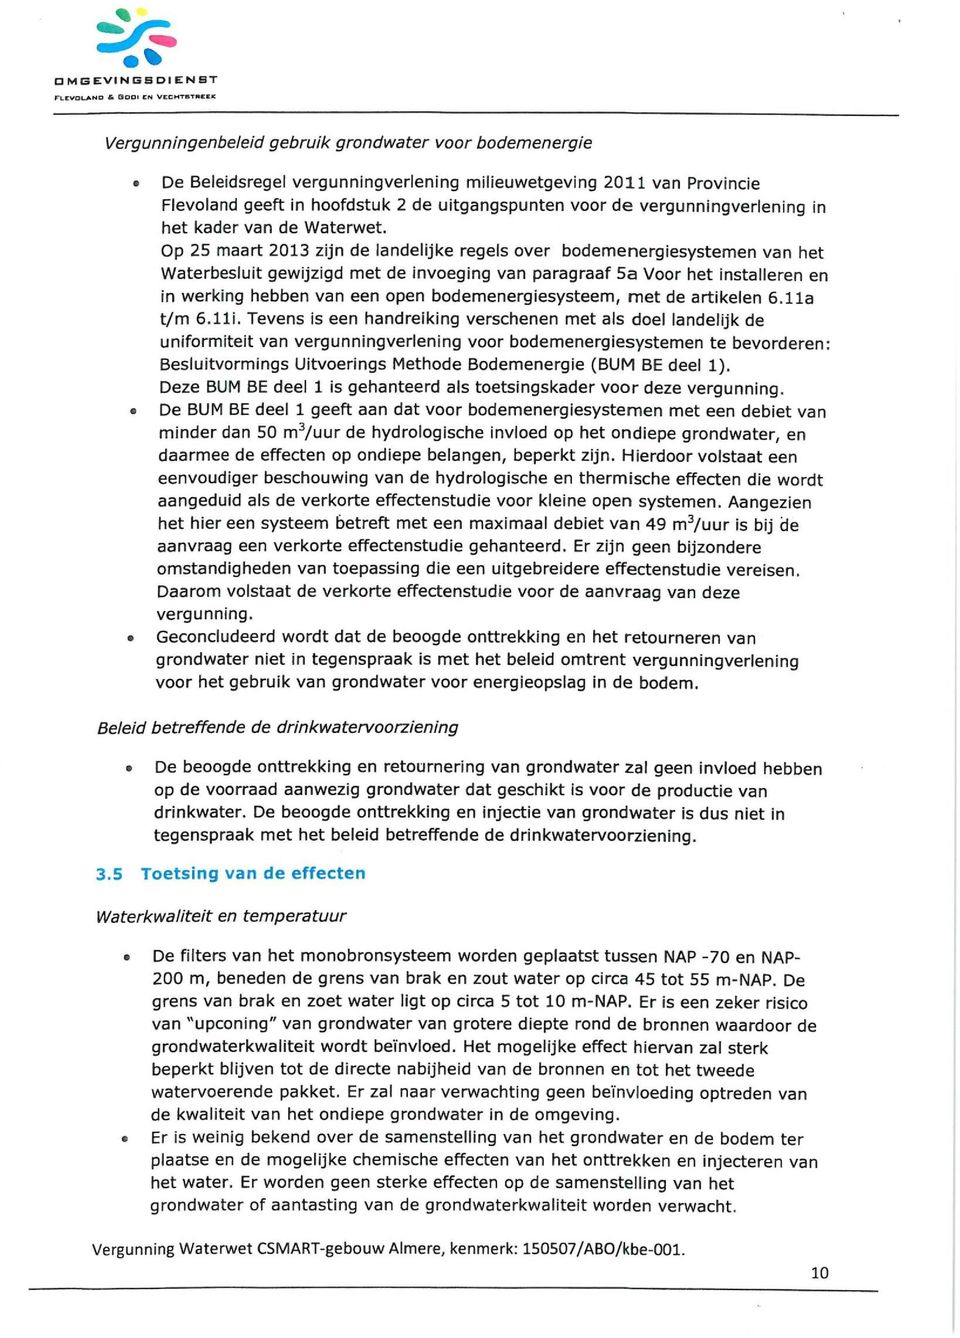 Op 25 maart 2013 zijn de landelijke regels over bodemenergiesystemen van het Waterbesluit gewijzigd met de invoeging van paragraaf 5a Voor het installeren en in werking hebben van een open